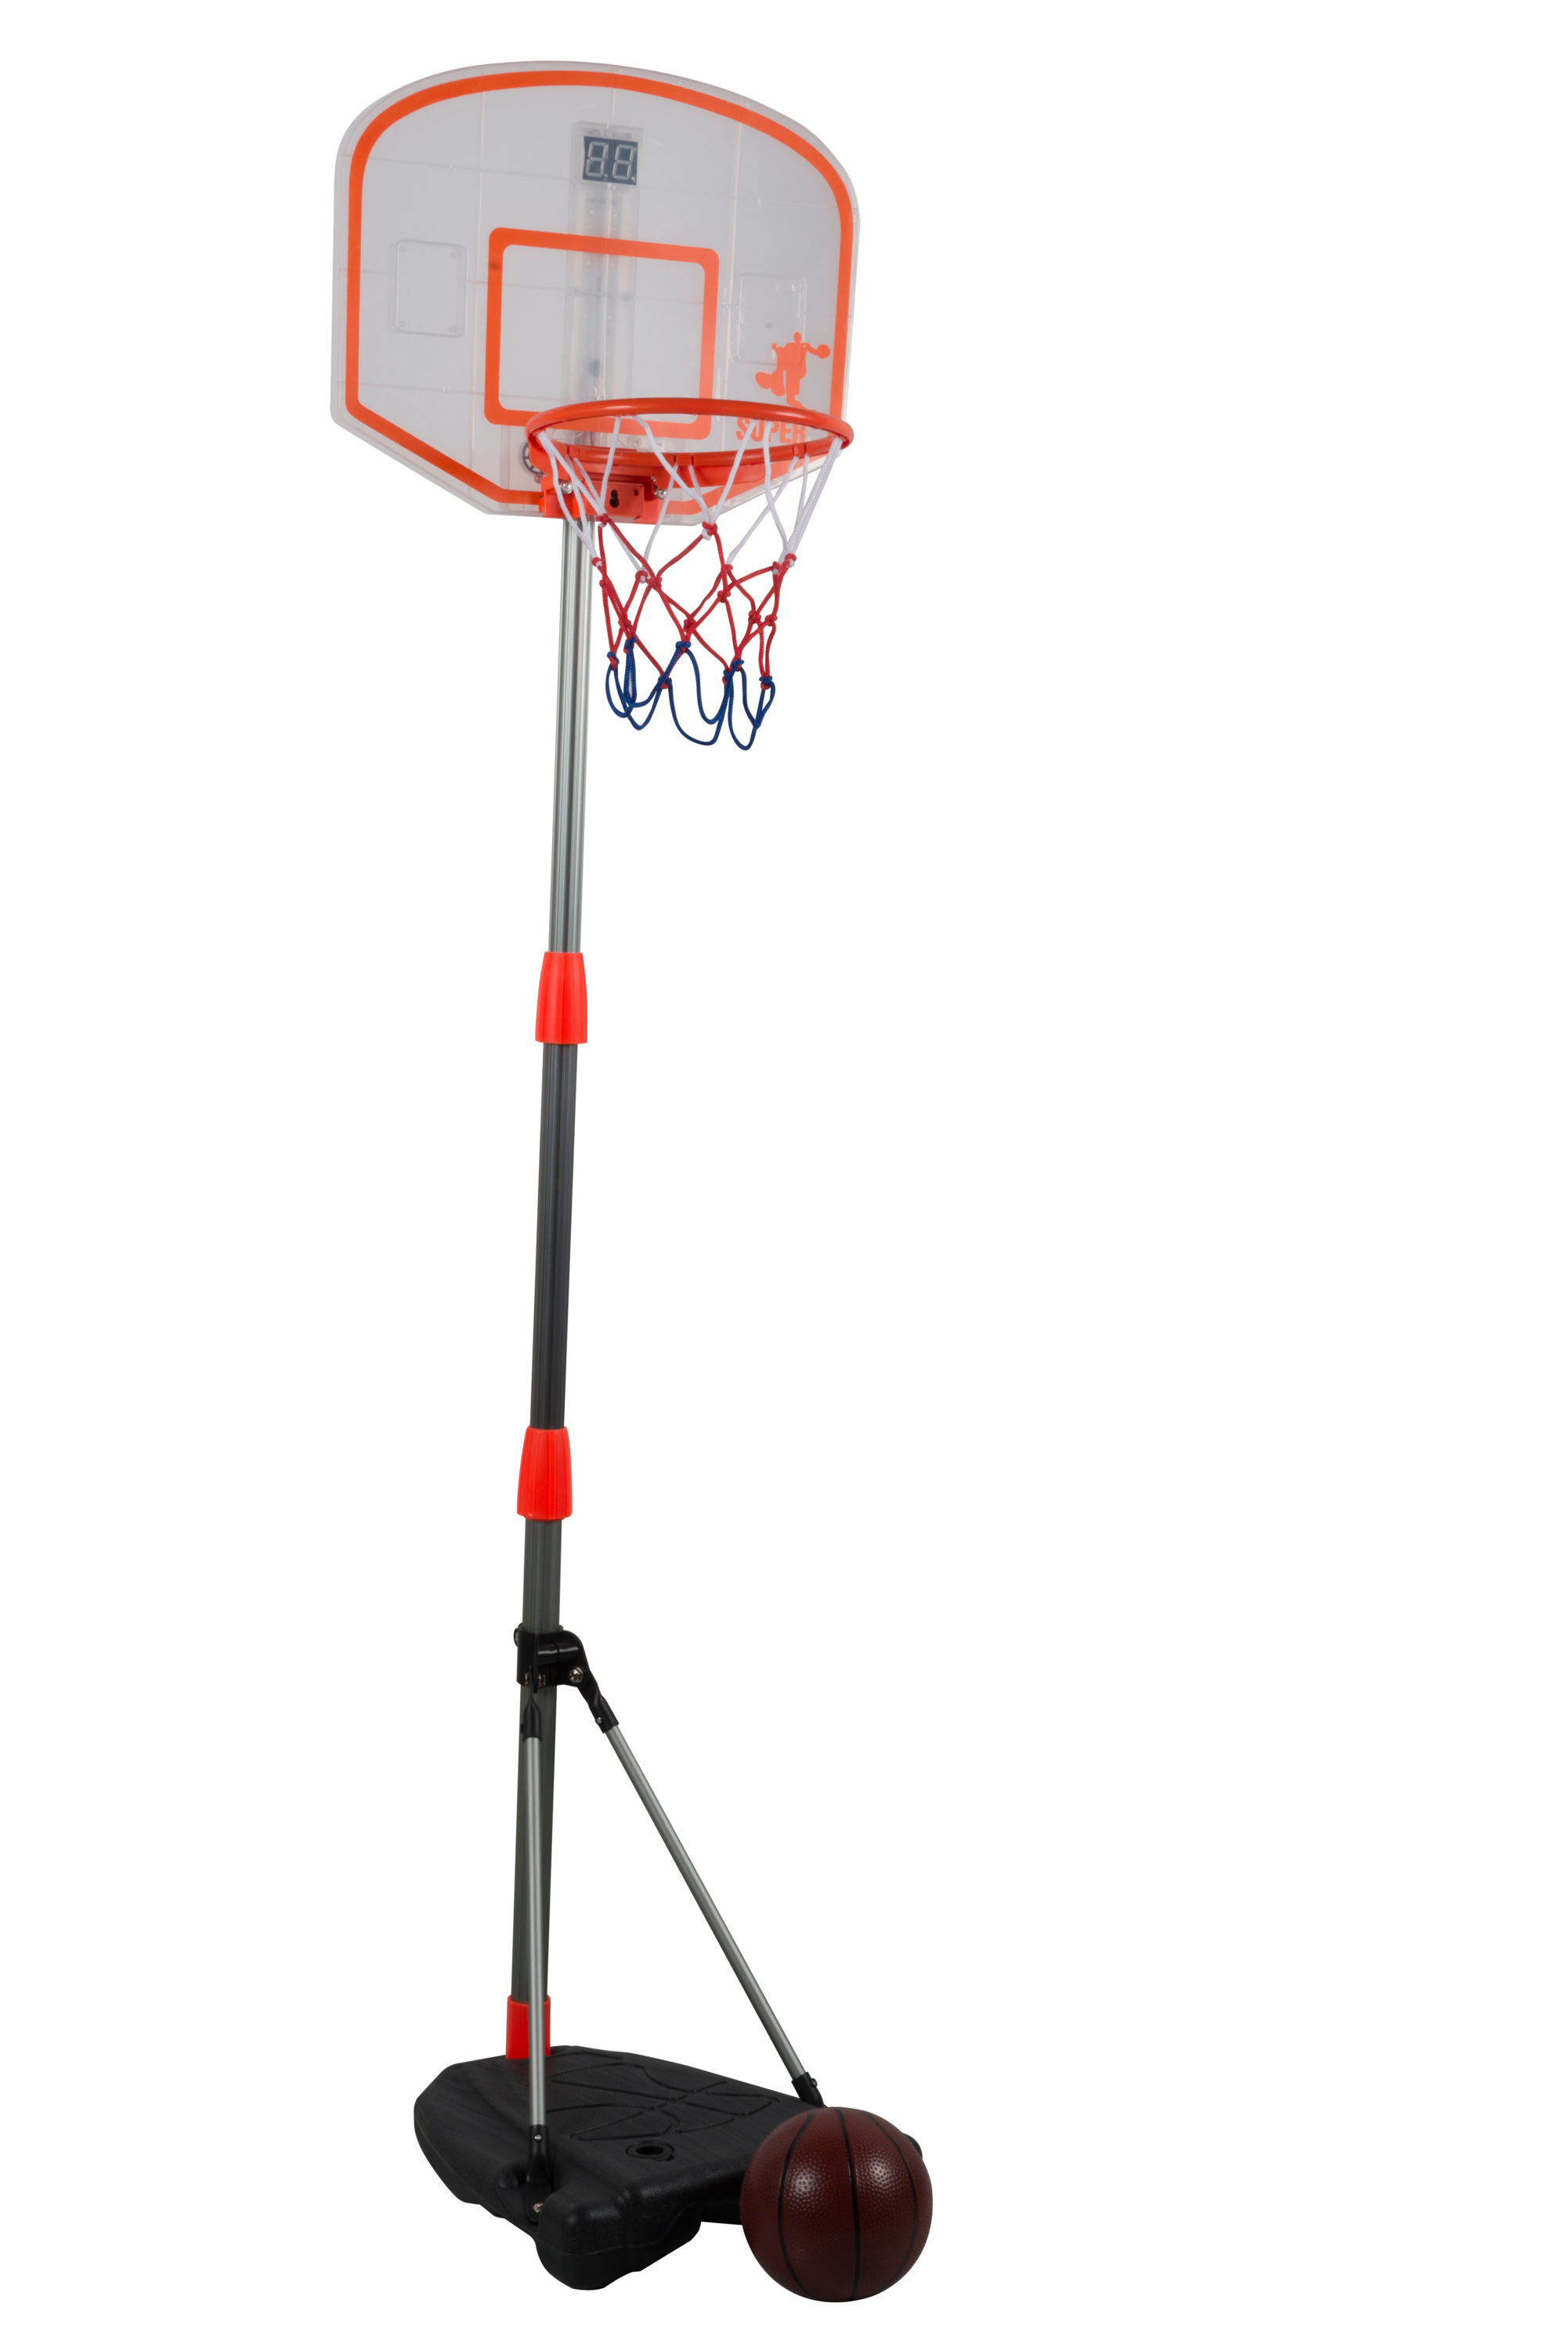 Dunlop Basketballset mit Sound für die Tür Basketballkorb Basketball Ballpumpe 